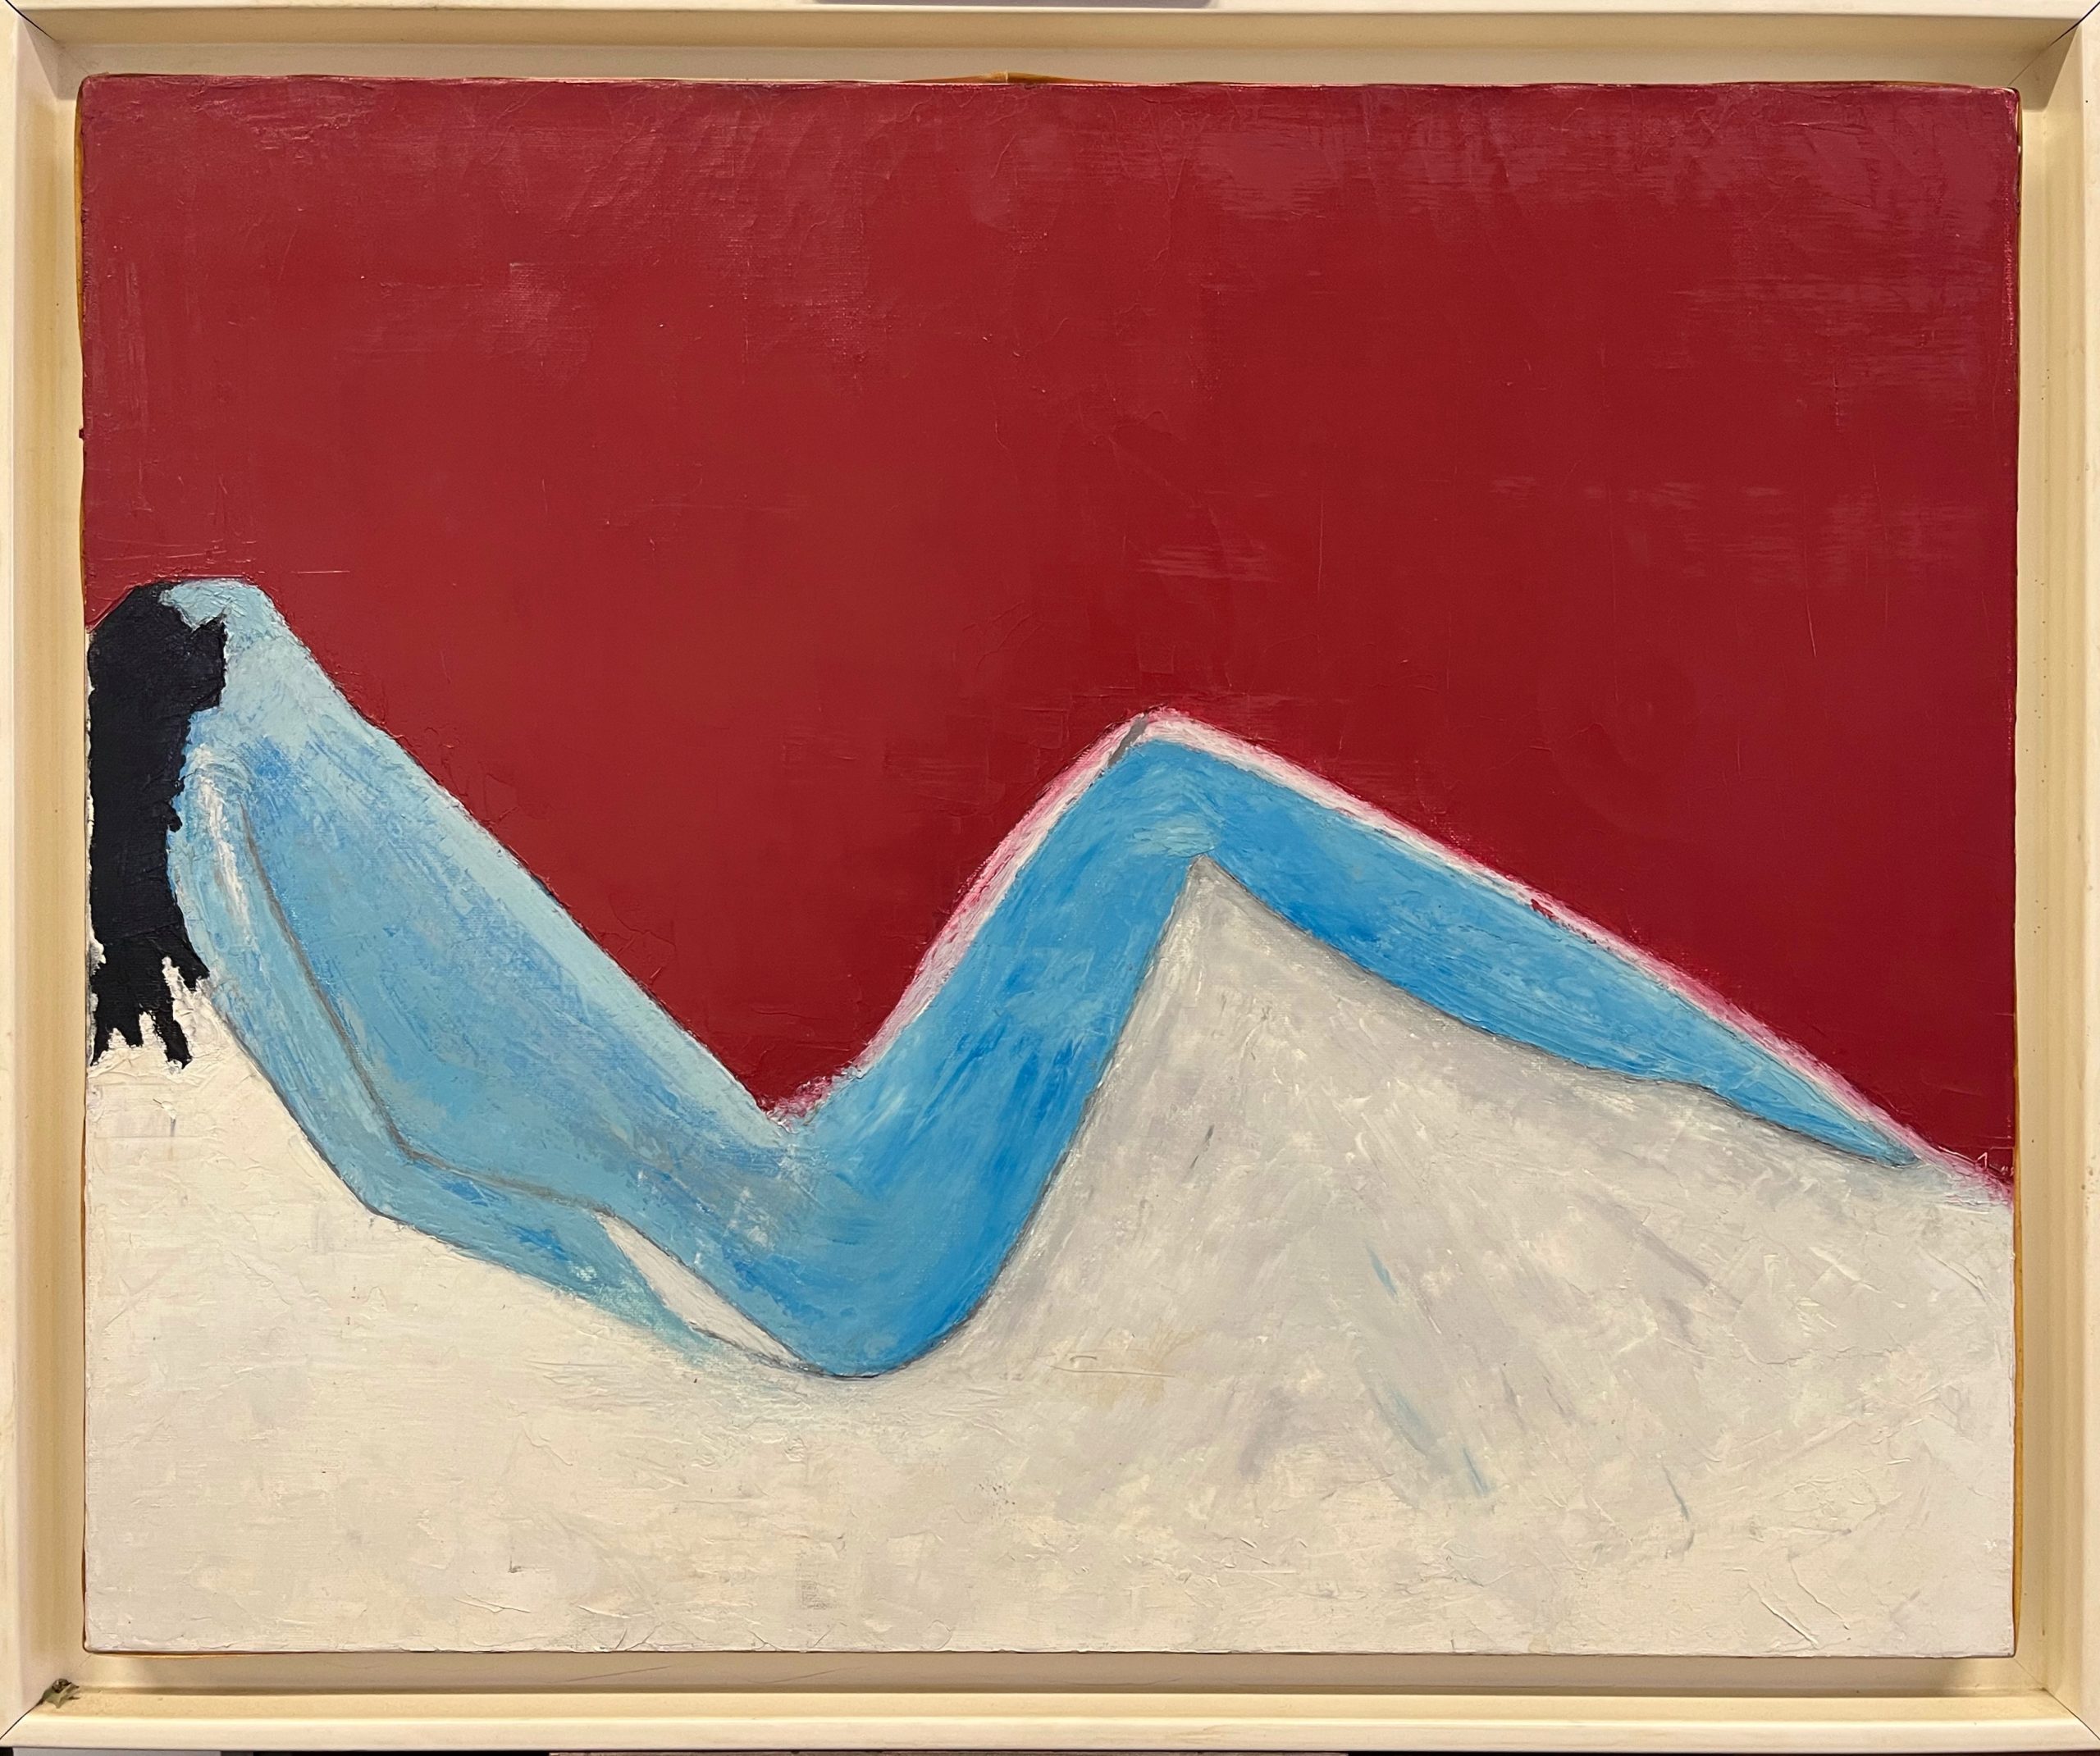 Femme nue allongée, huile sur toile, fin XXe, 56x67 cm encadré